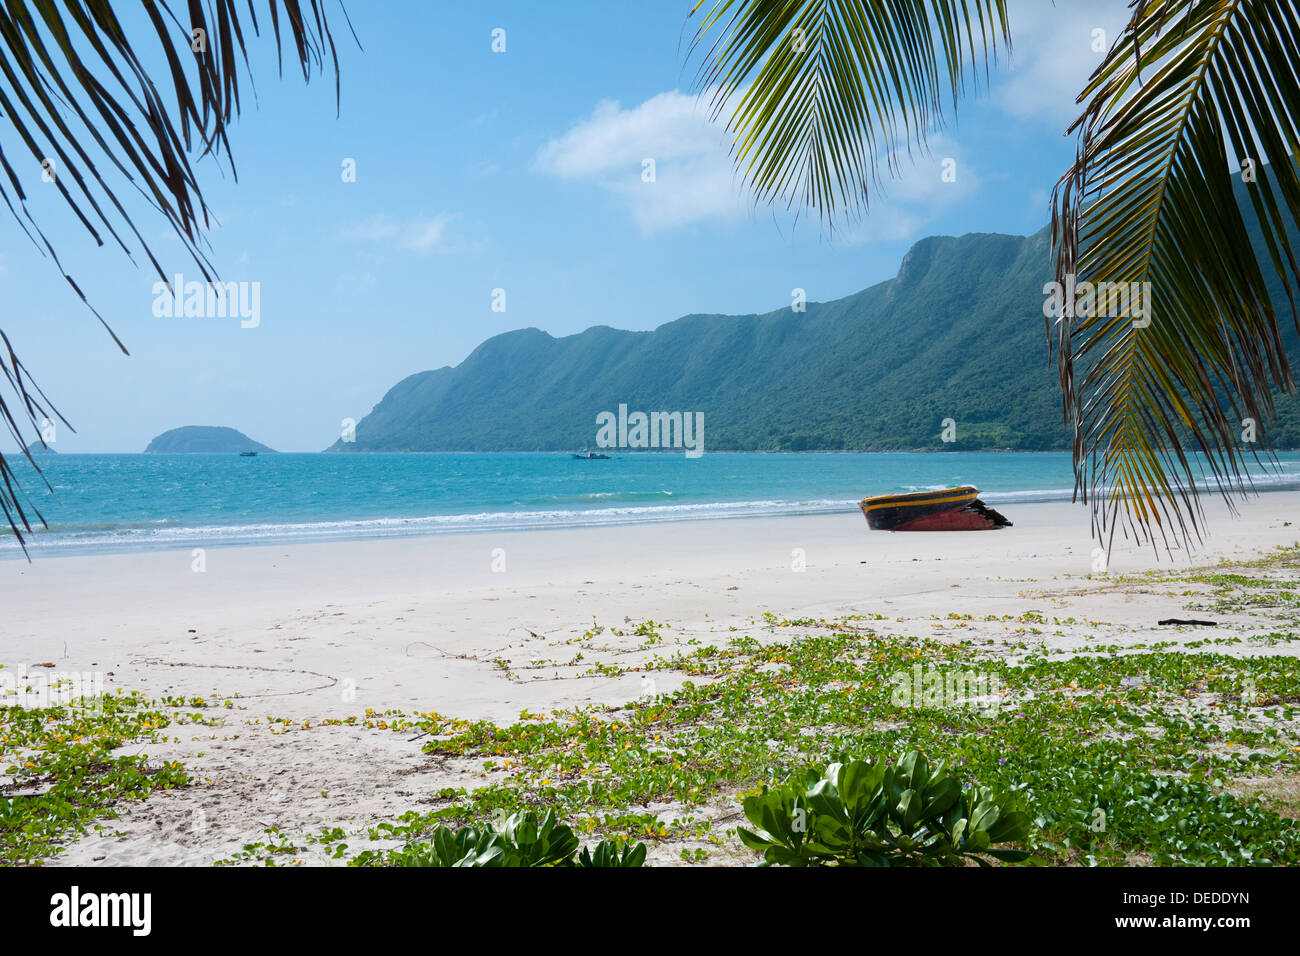 Una vista incredibile di un Hai sulla spiaggia Con Son Isola, uno dei Con Dao le isole al largo della costa meridionale della Vietnam. Foto Stock